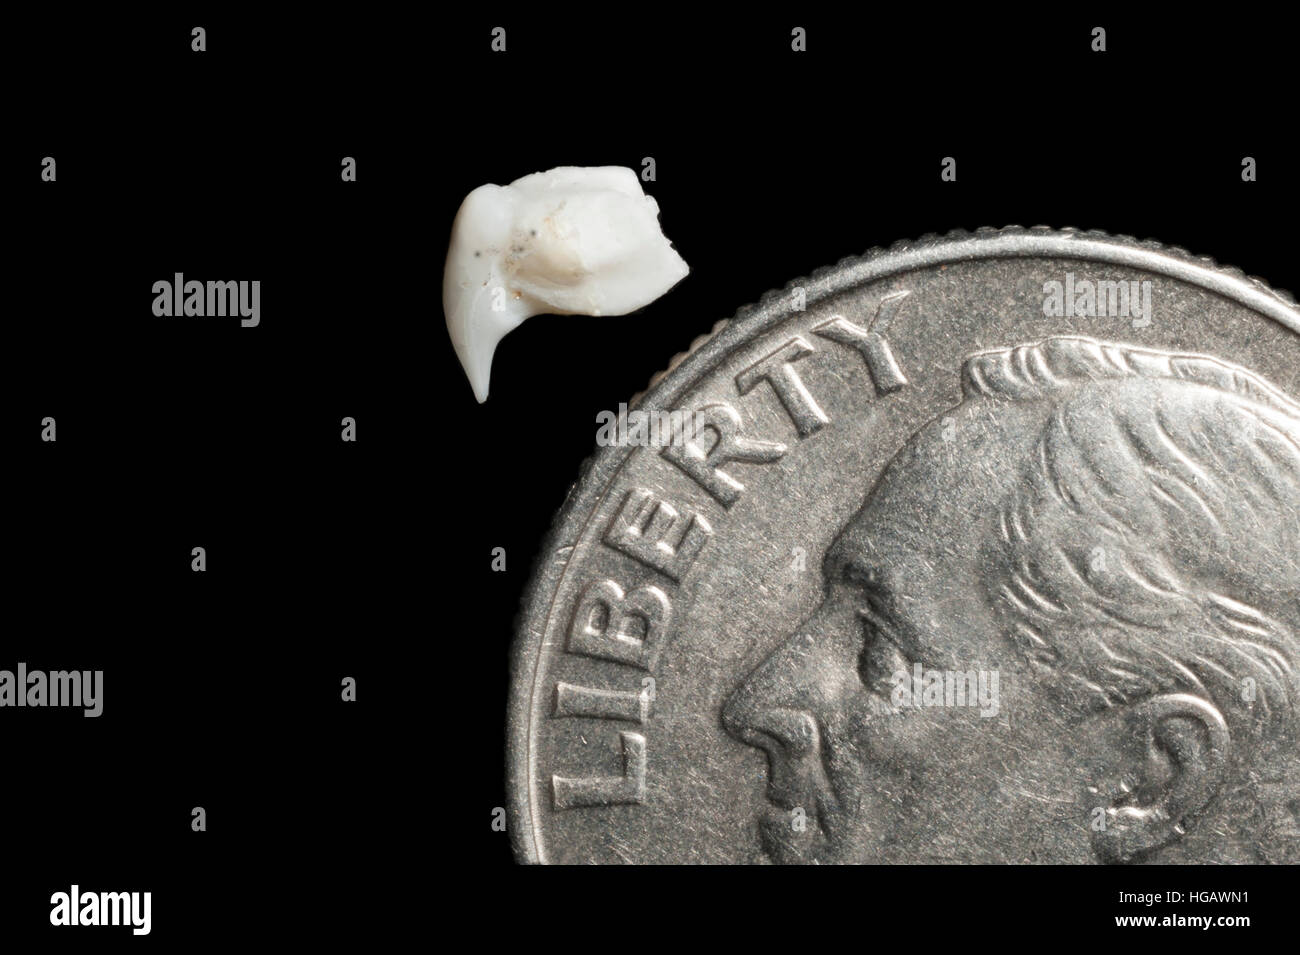 Dent de requin-baleine, Rhincodon typus, près de 10 cents américains (10 cents) pour la comparaison de taille (modifié numériquement) Banque D'Images